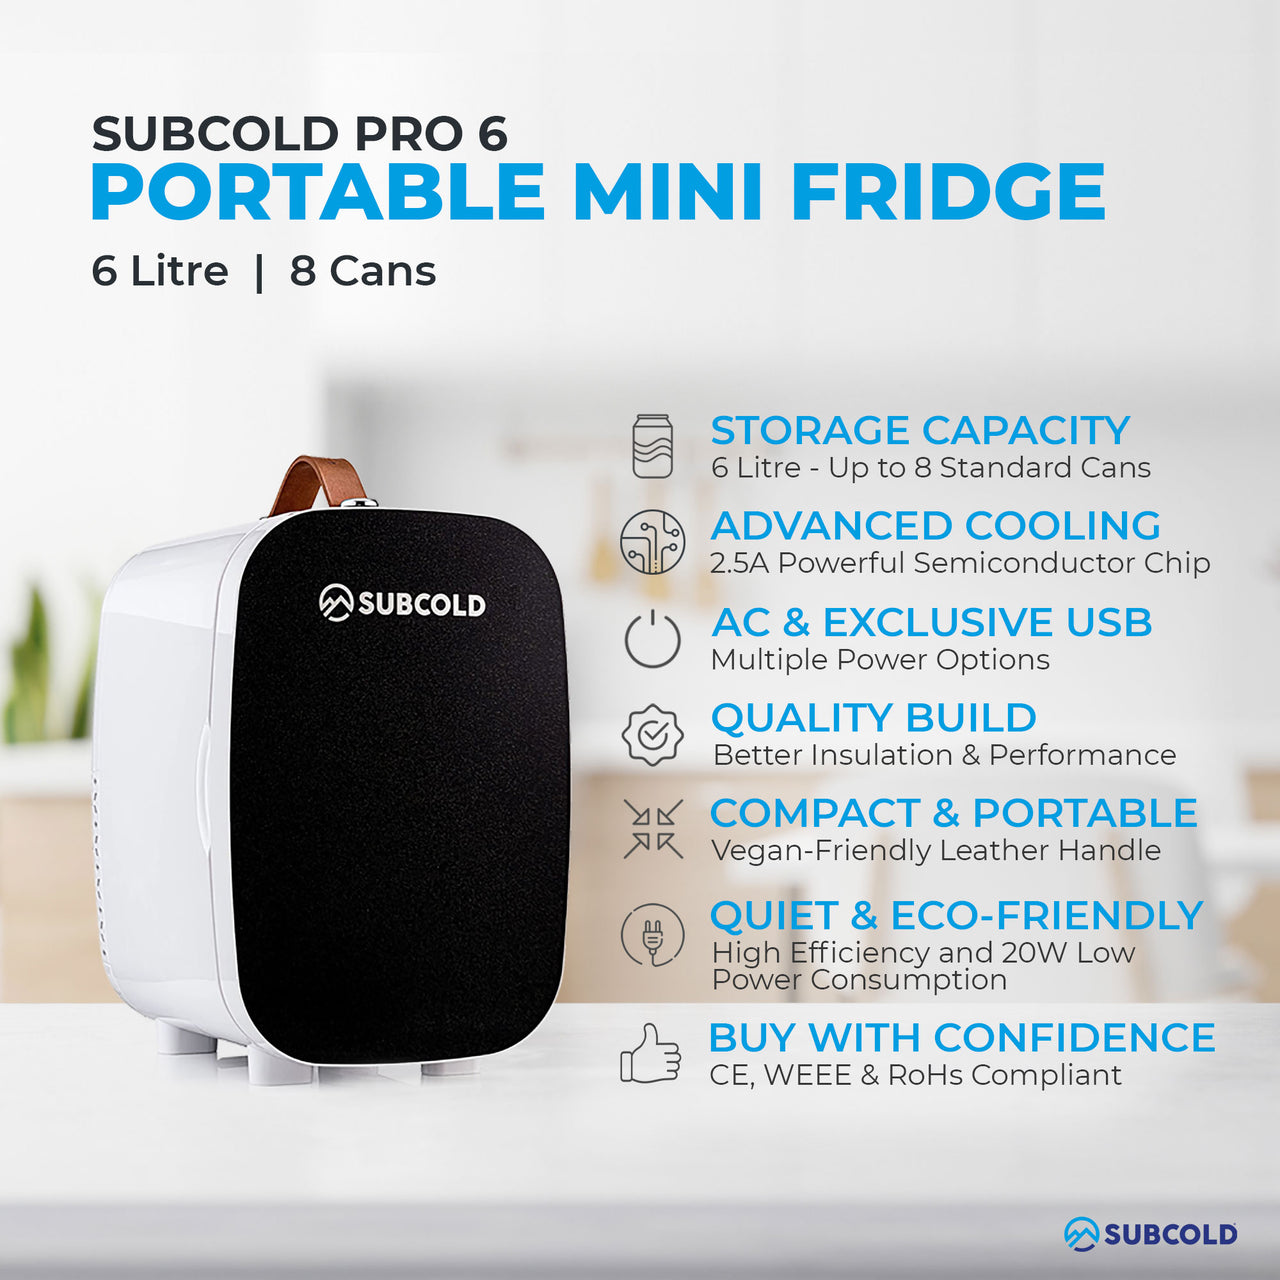 Subcold Pro 6 litre black mini fridge features infographic